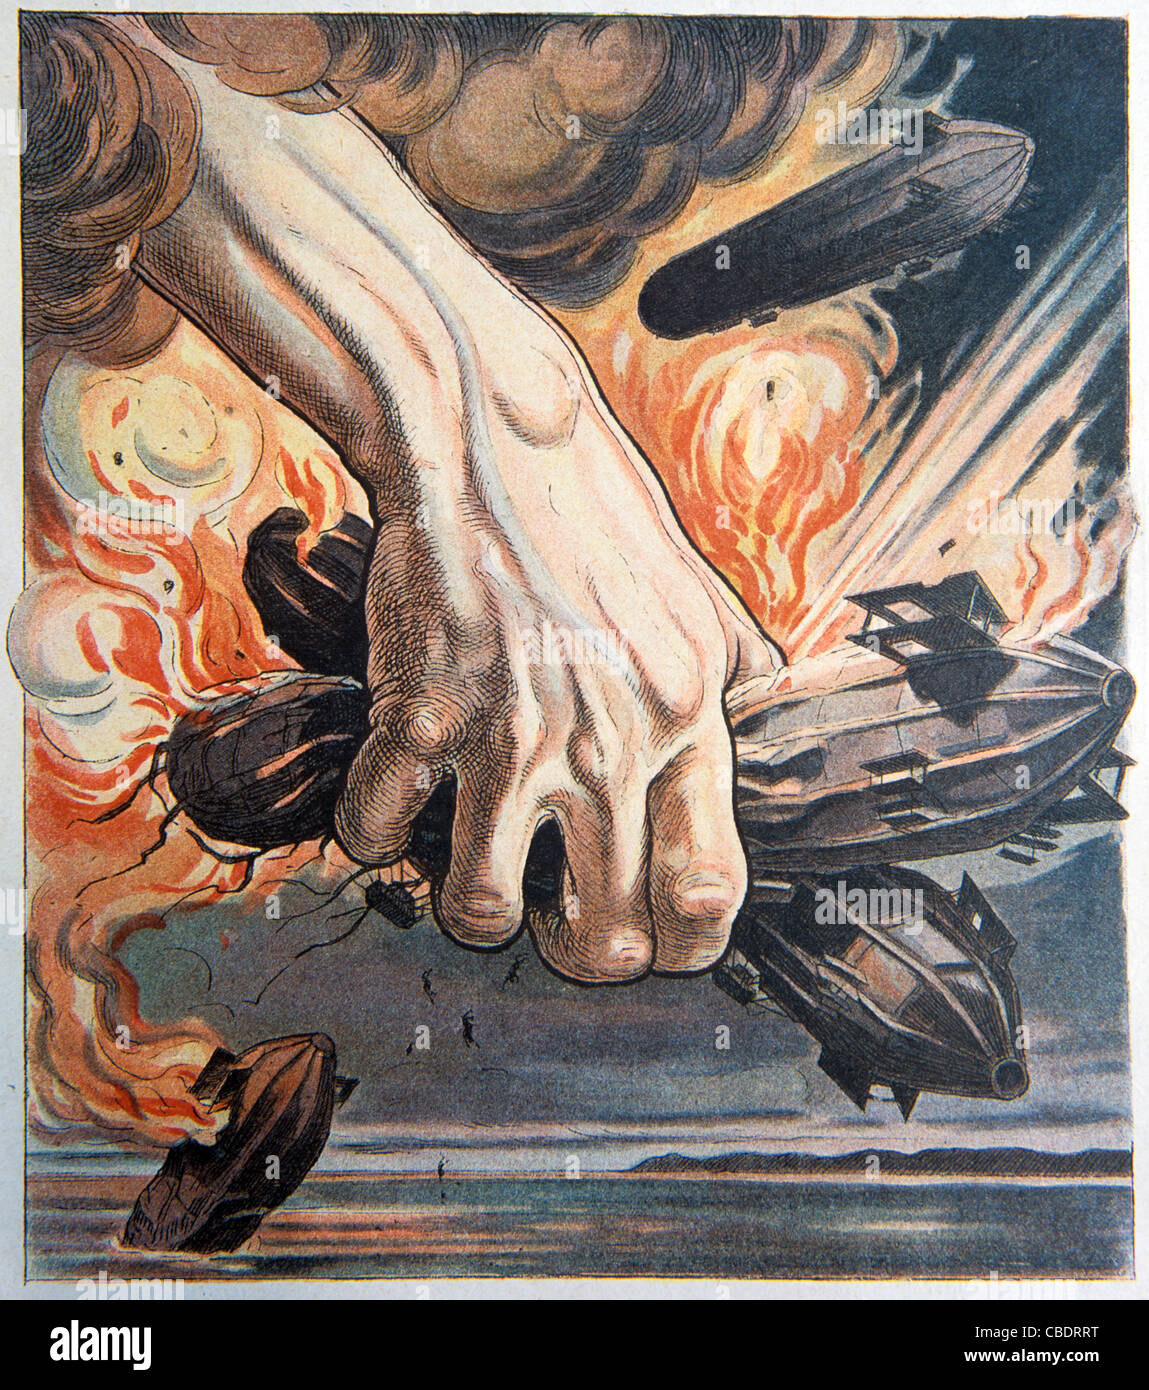 Les zeppelins allemands utilisés dans les raids aériens. Première Guerre mondiale la propagande. Édition de guerre magazine satirique français, "Le Rire", Mars 1915 Banque D'Images